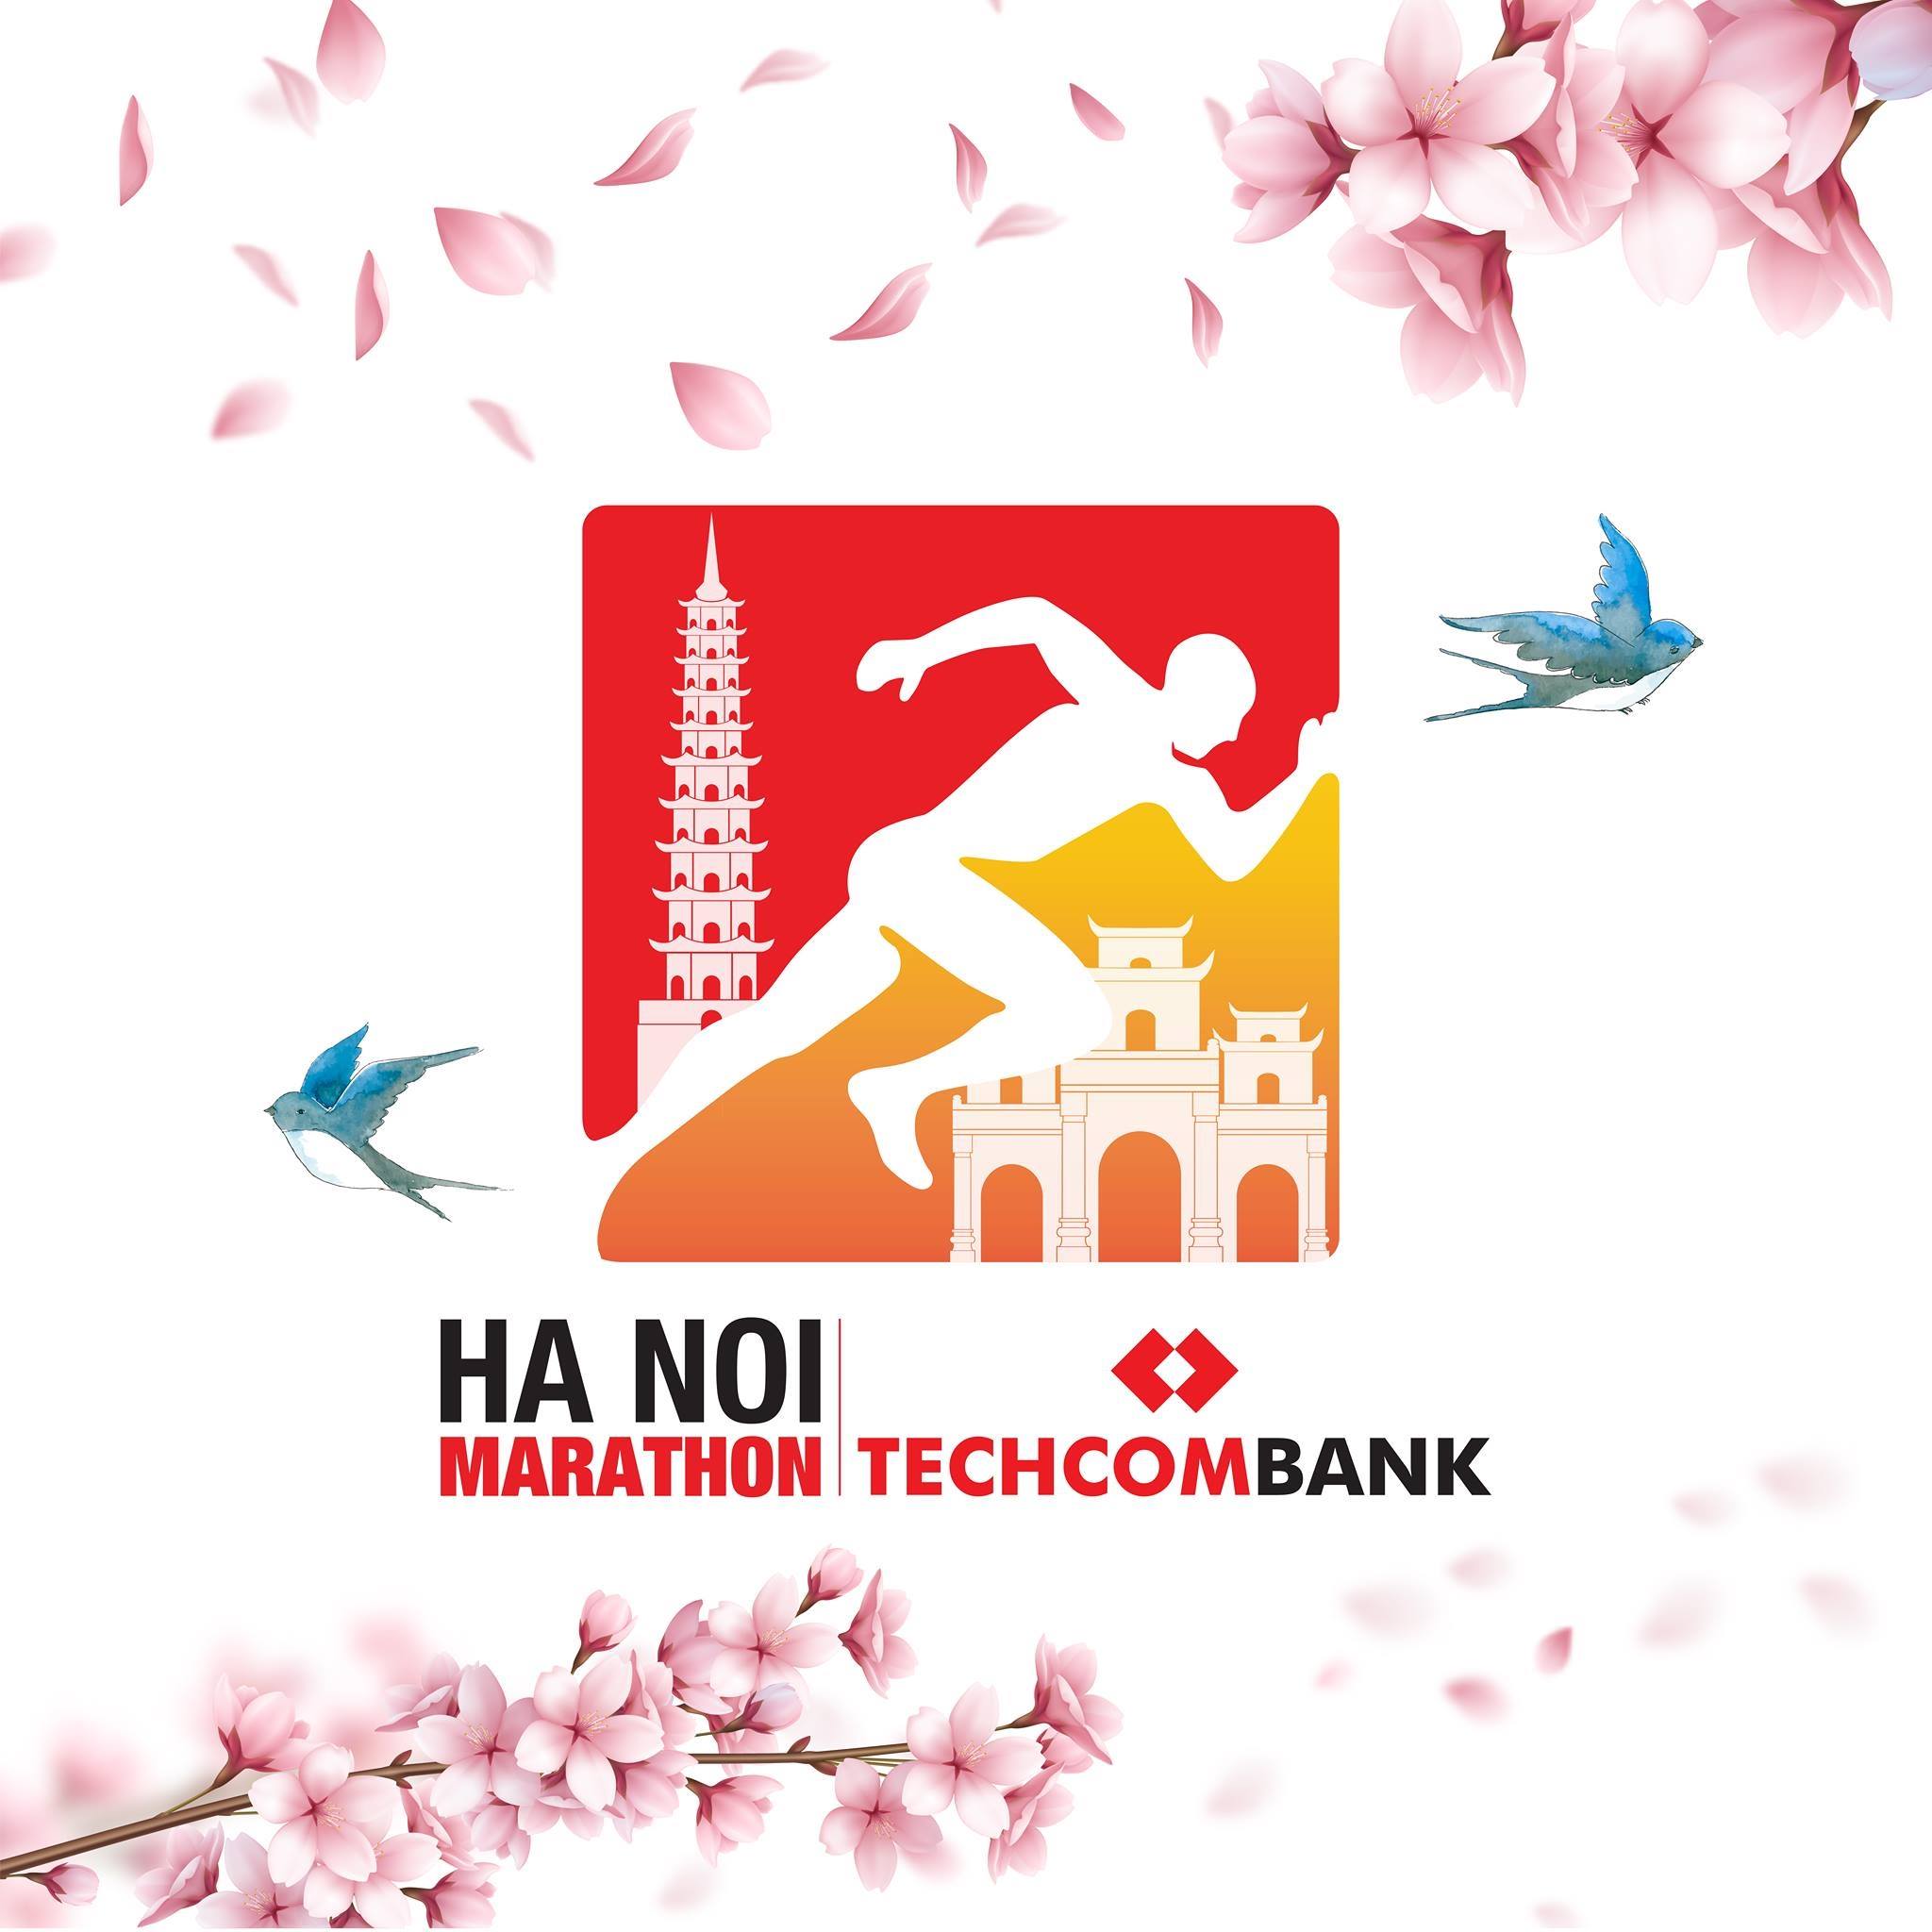 Techcombank Hanoi Marathon logo on RaceRaves